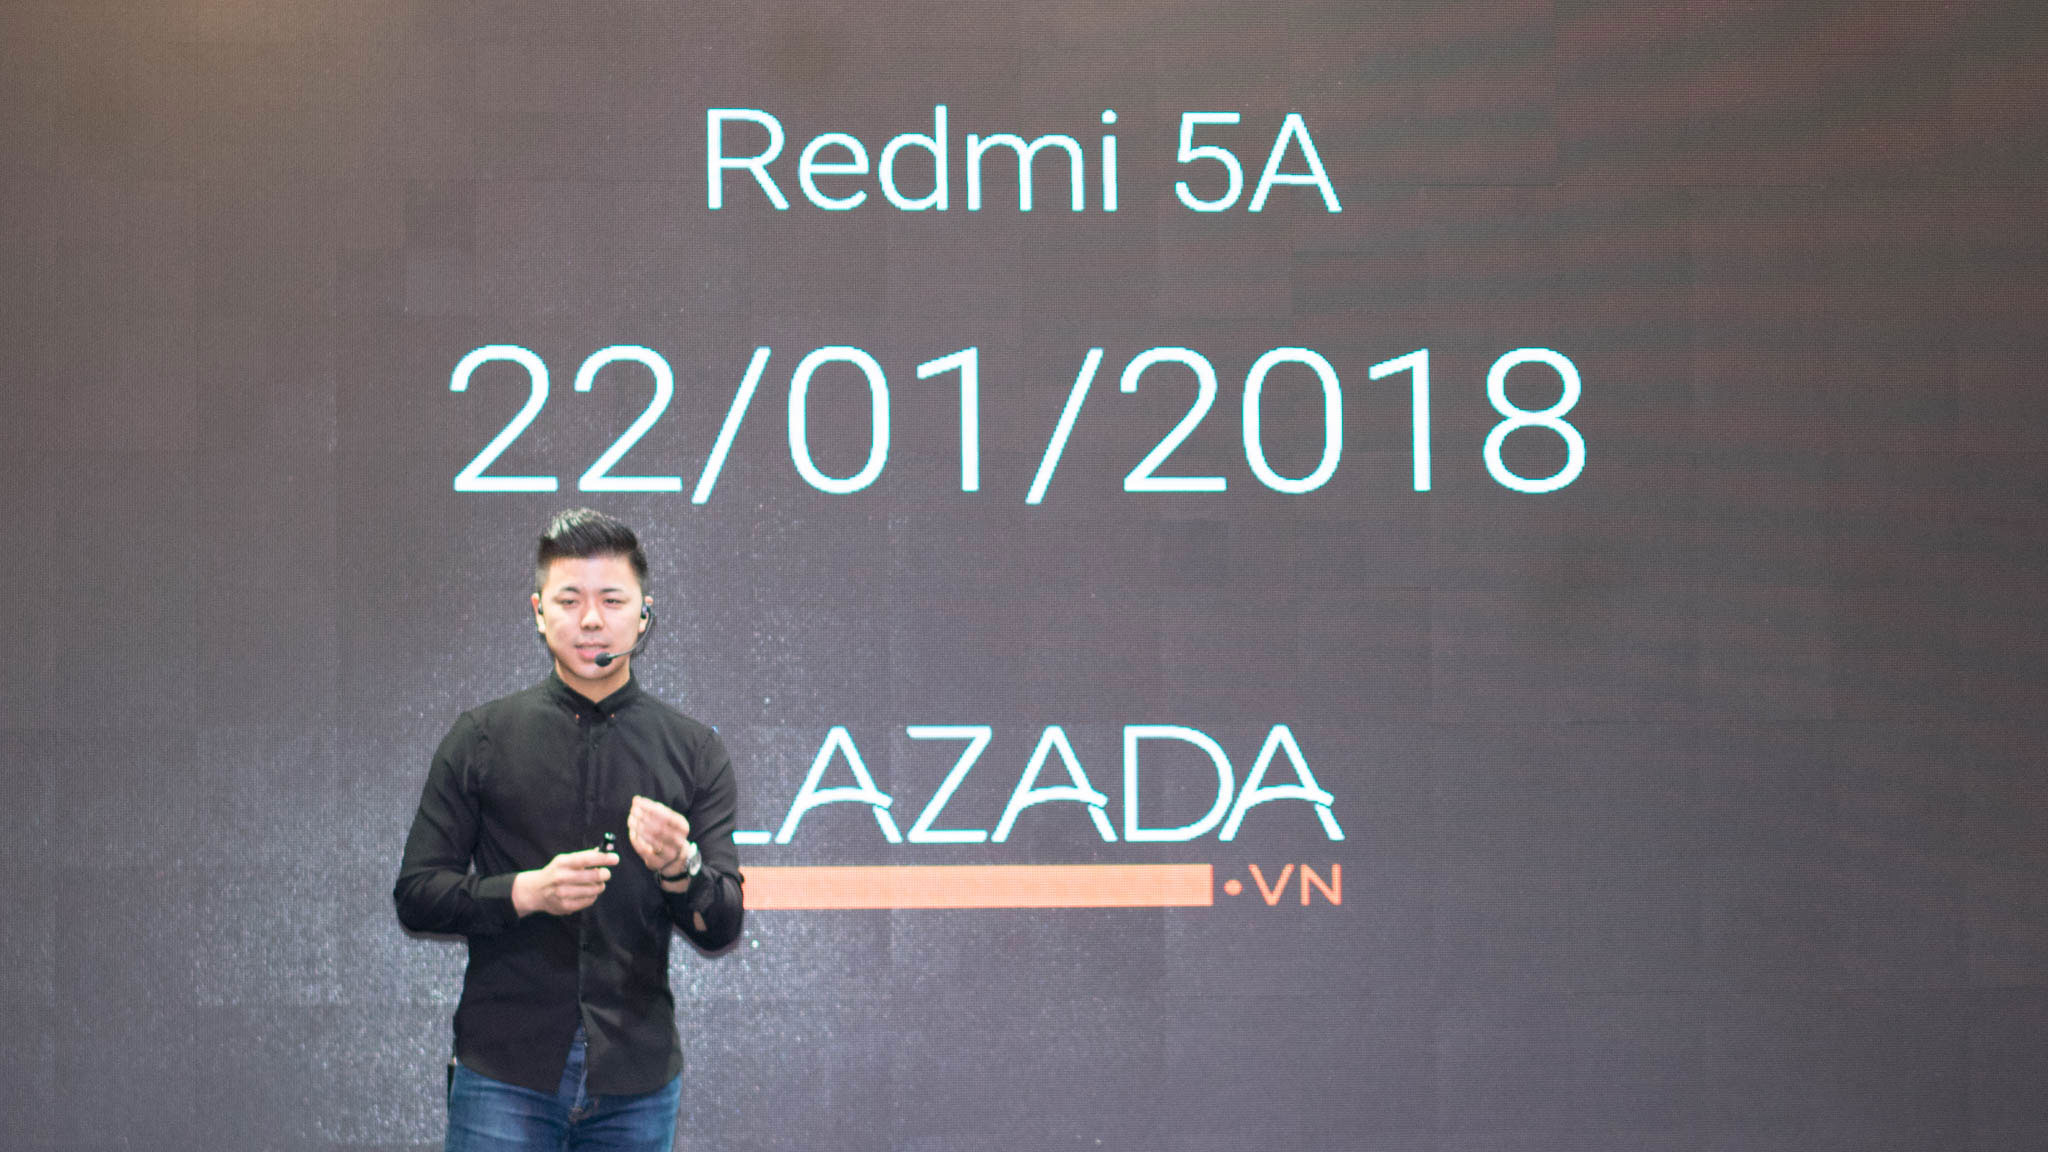 Xiaomi chính thức ra mắt Redmi 5A tại Việt Nam với
chip Snapdragon 425, camera 13MP, giá chỉ 1.790.000 VNĐ